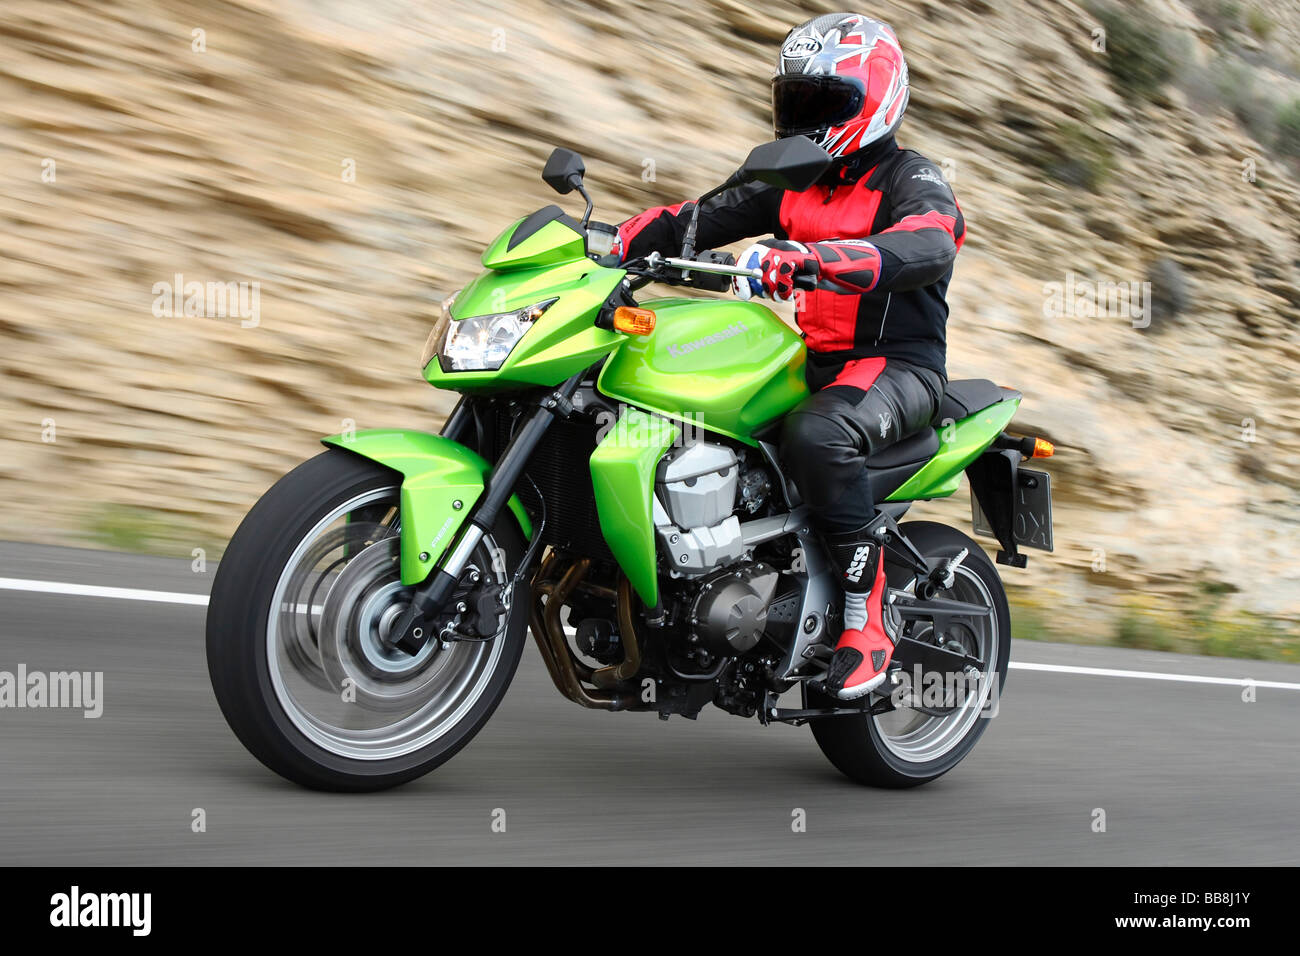 Kawasaki Z750 motorcycle, riding shot Stock Photo